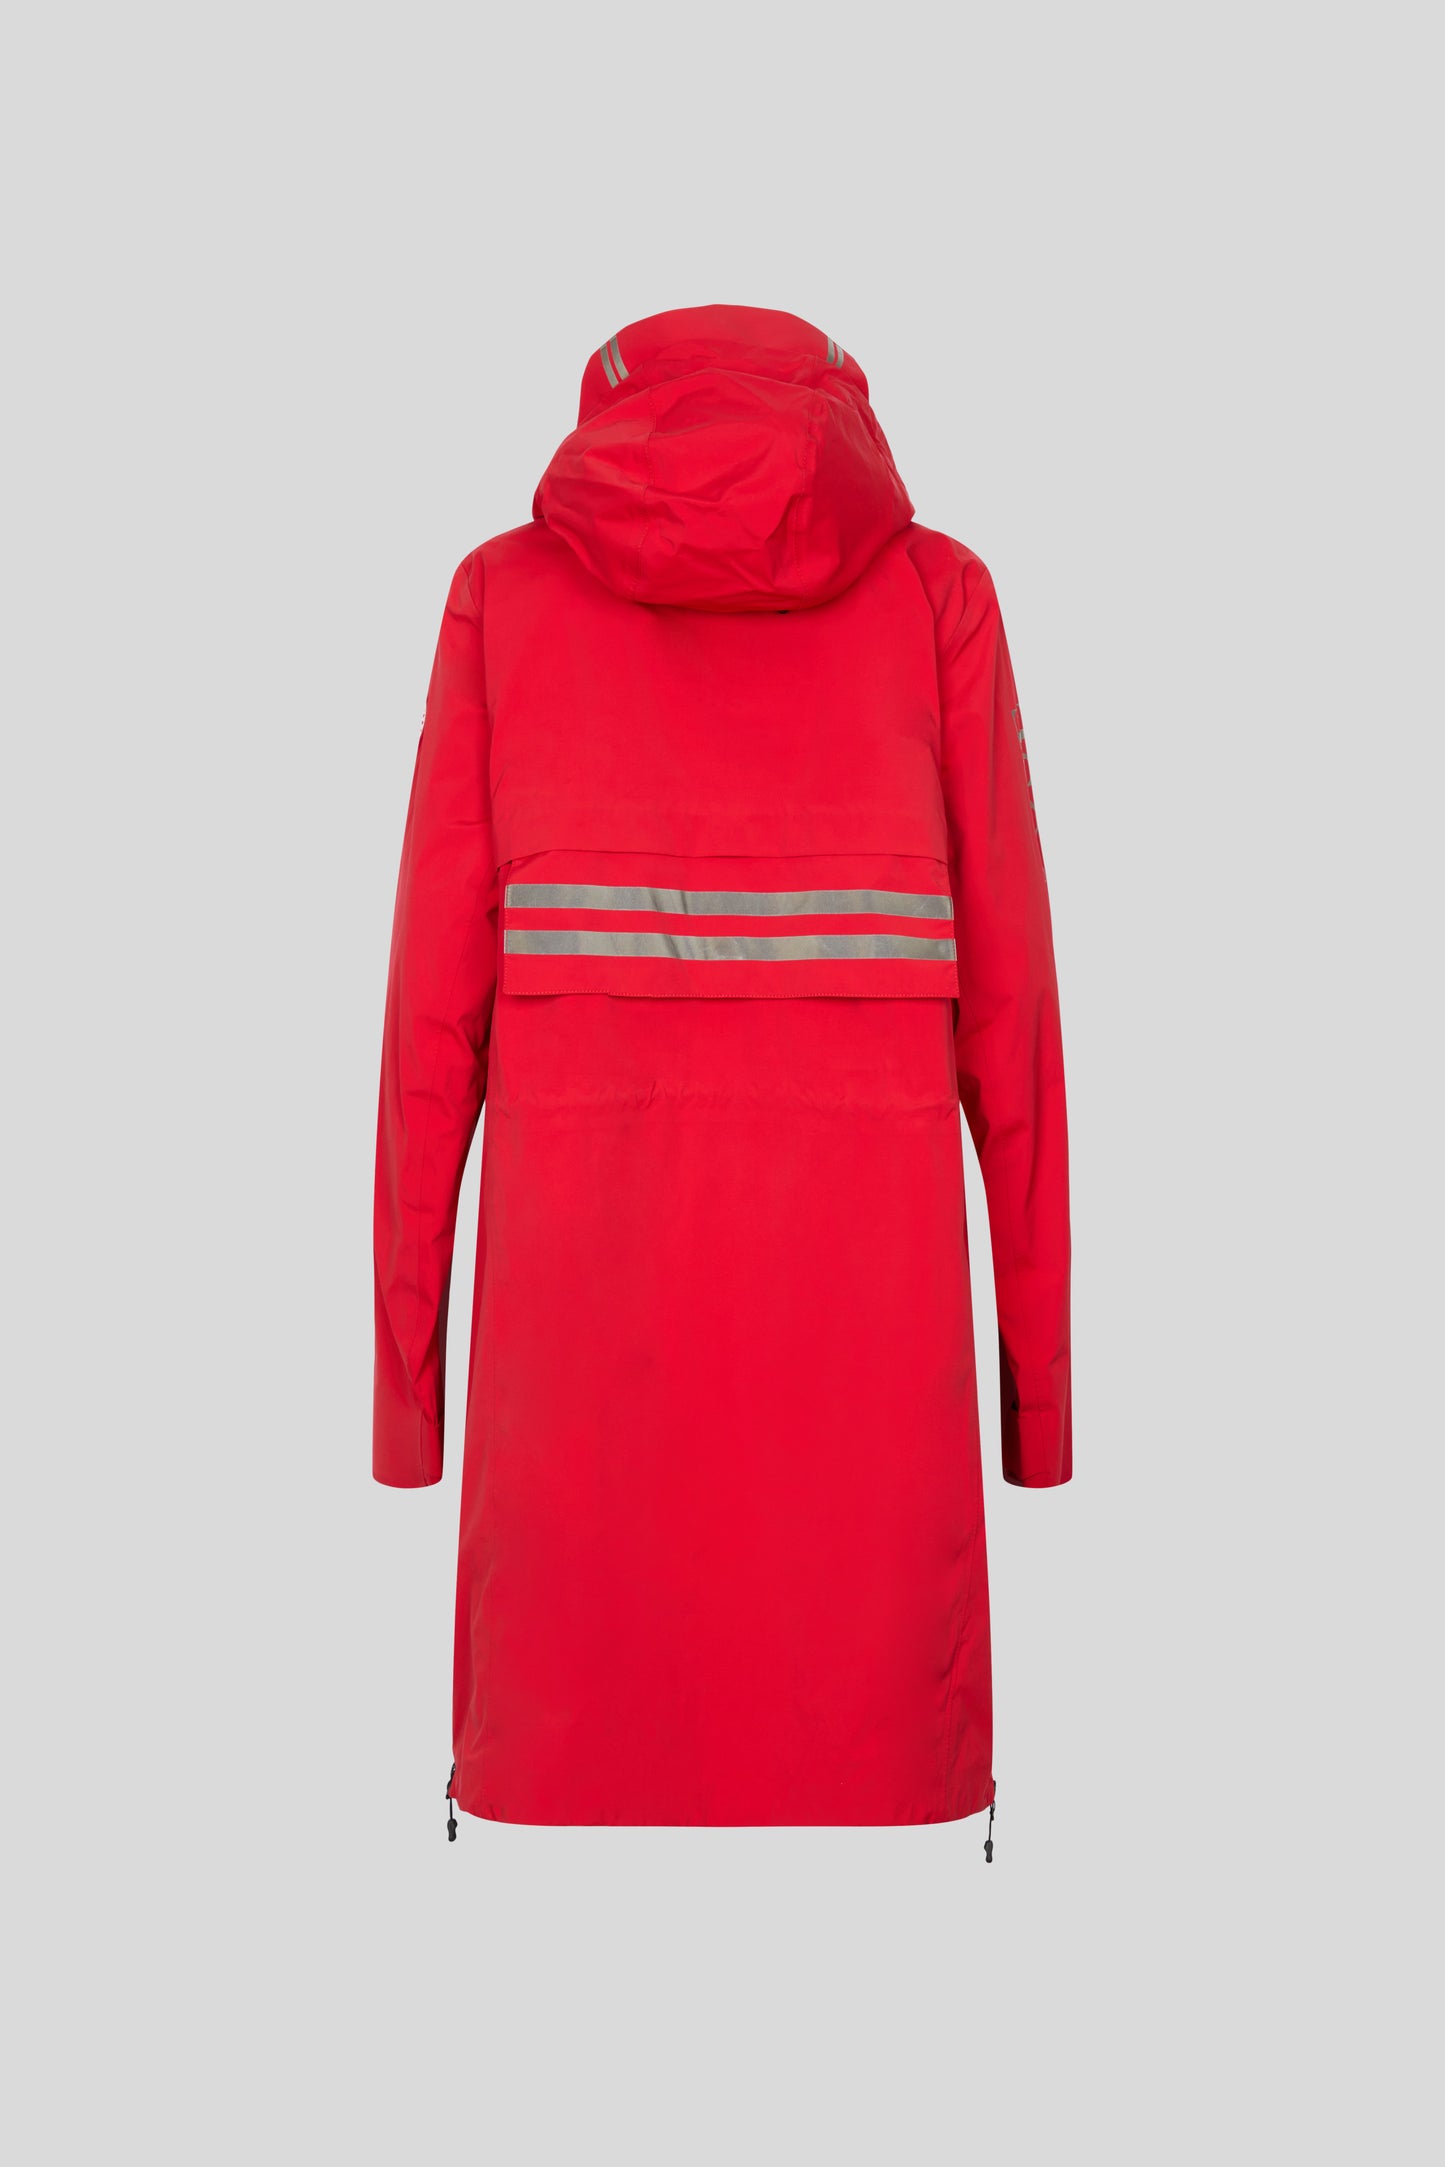 Women's Seaboard Rain Jacket